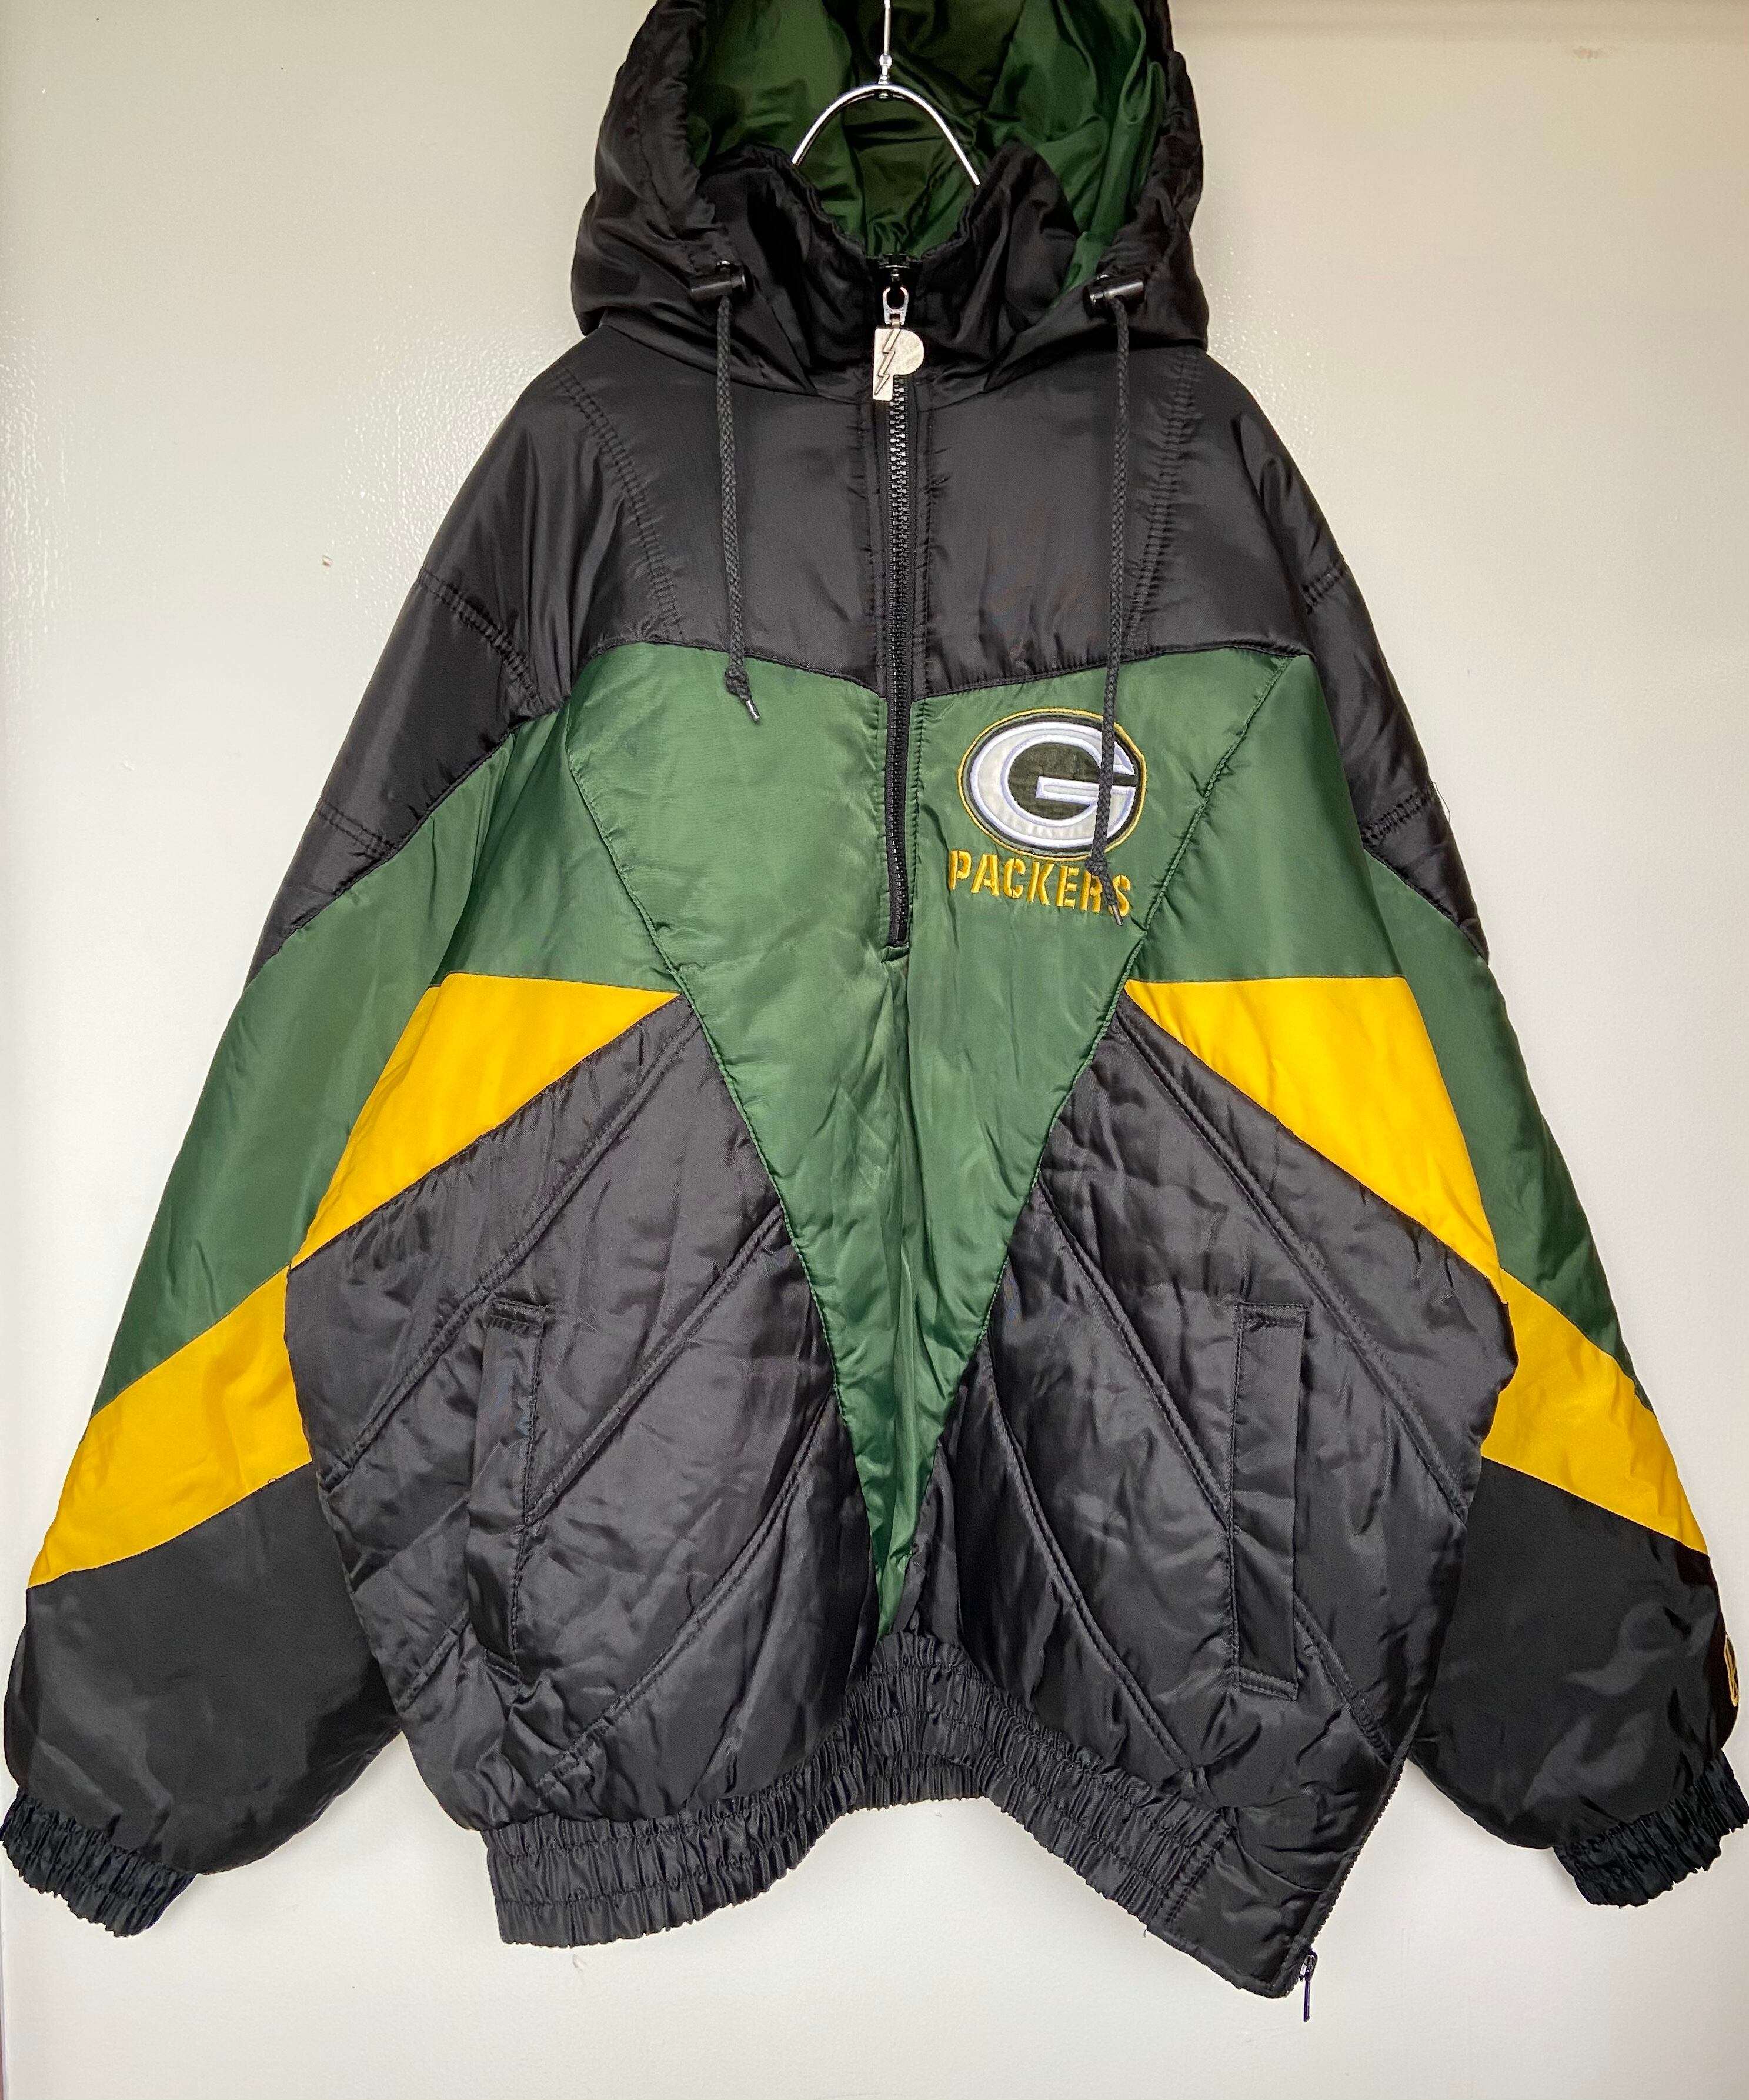 90s NFL グリーンベイパッカーズリバーシブル刺繍ロゴブルゾン 黒 緑